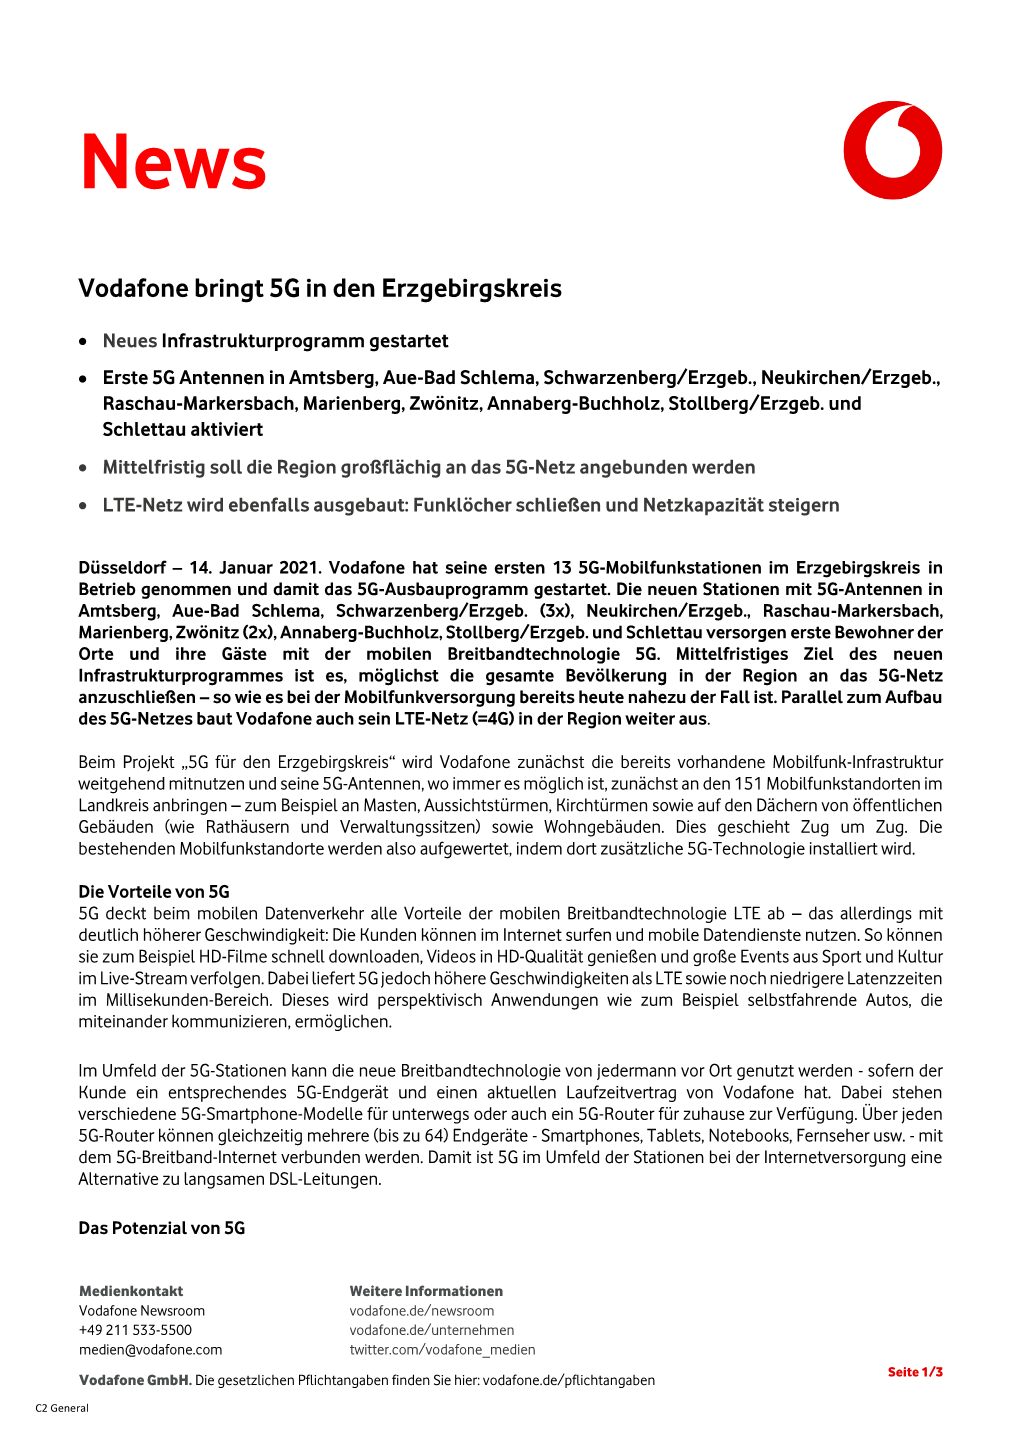 Vodafone Bringt 5G in Den Erzgebirgskreis